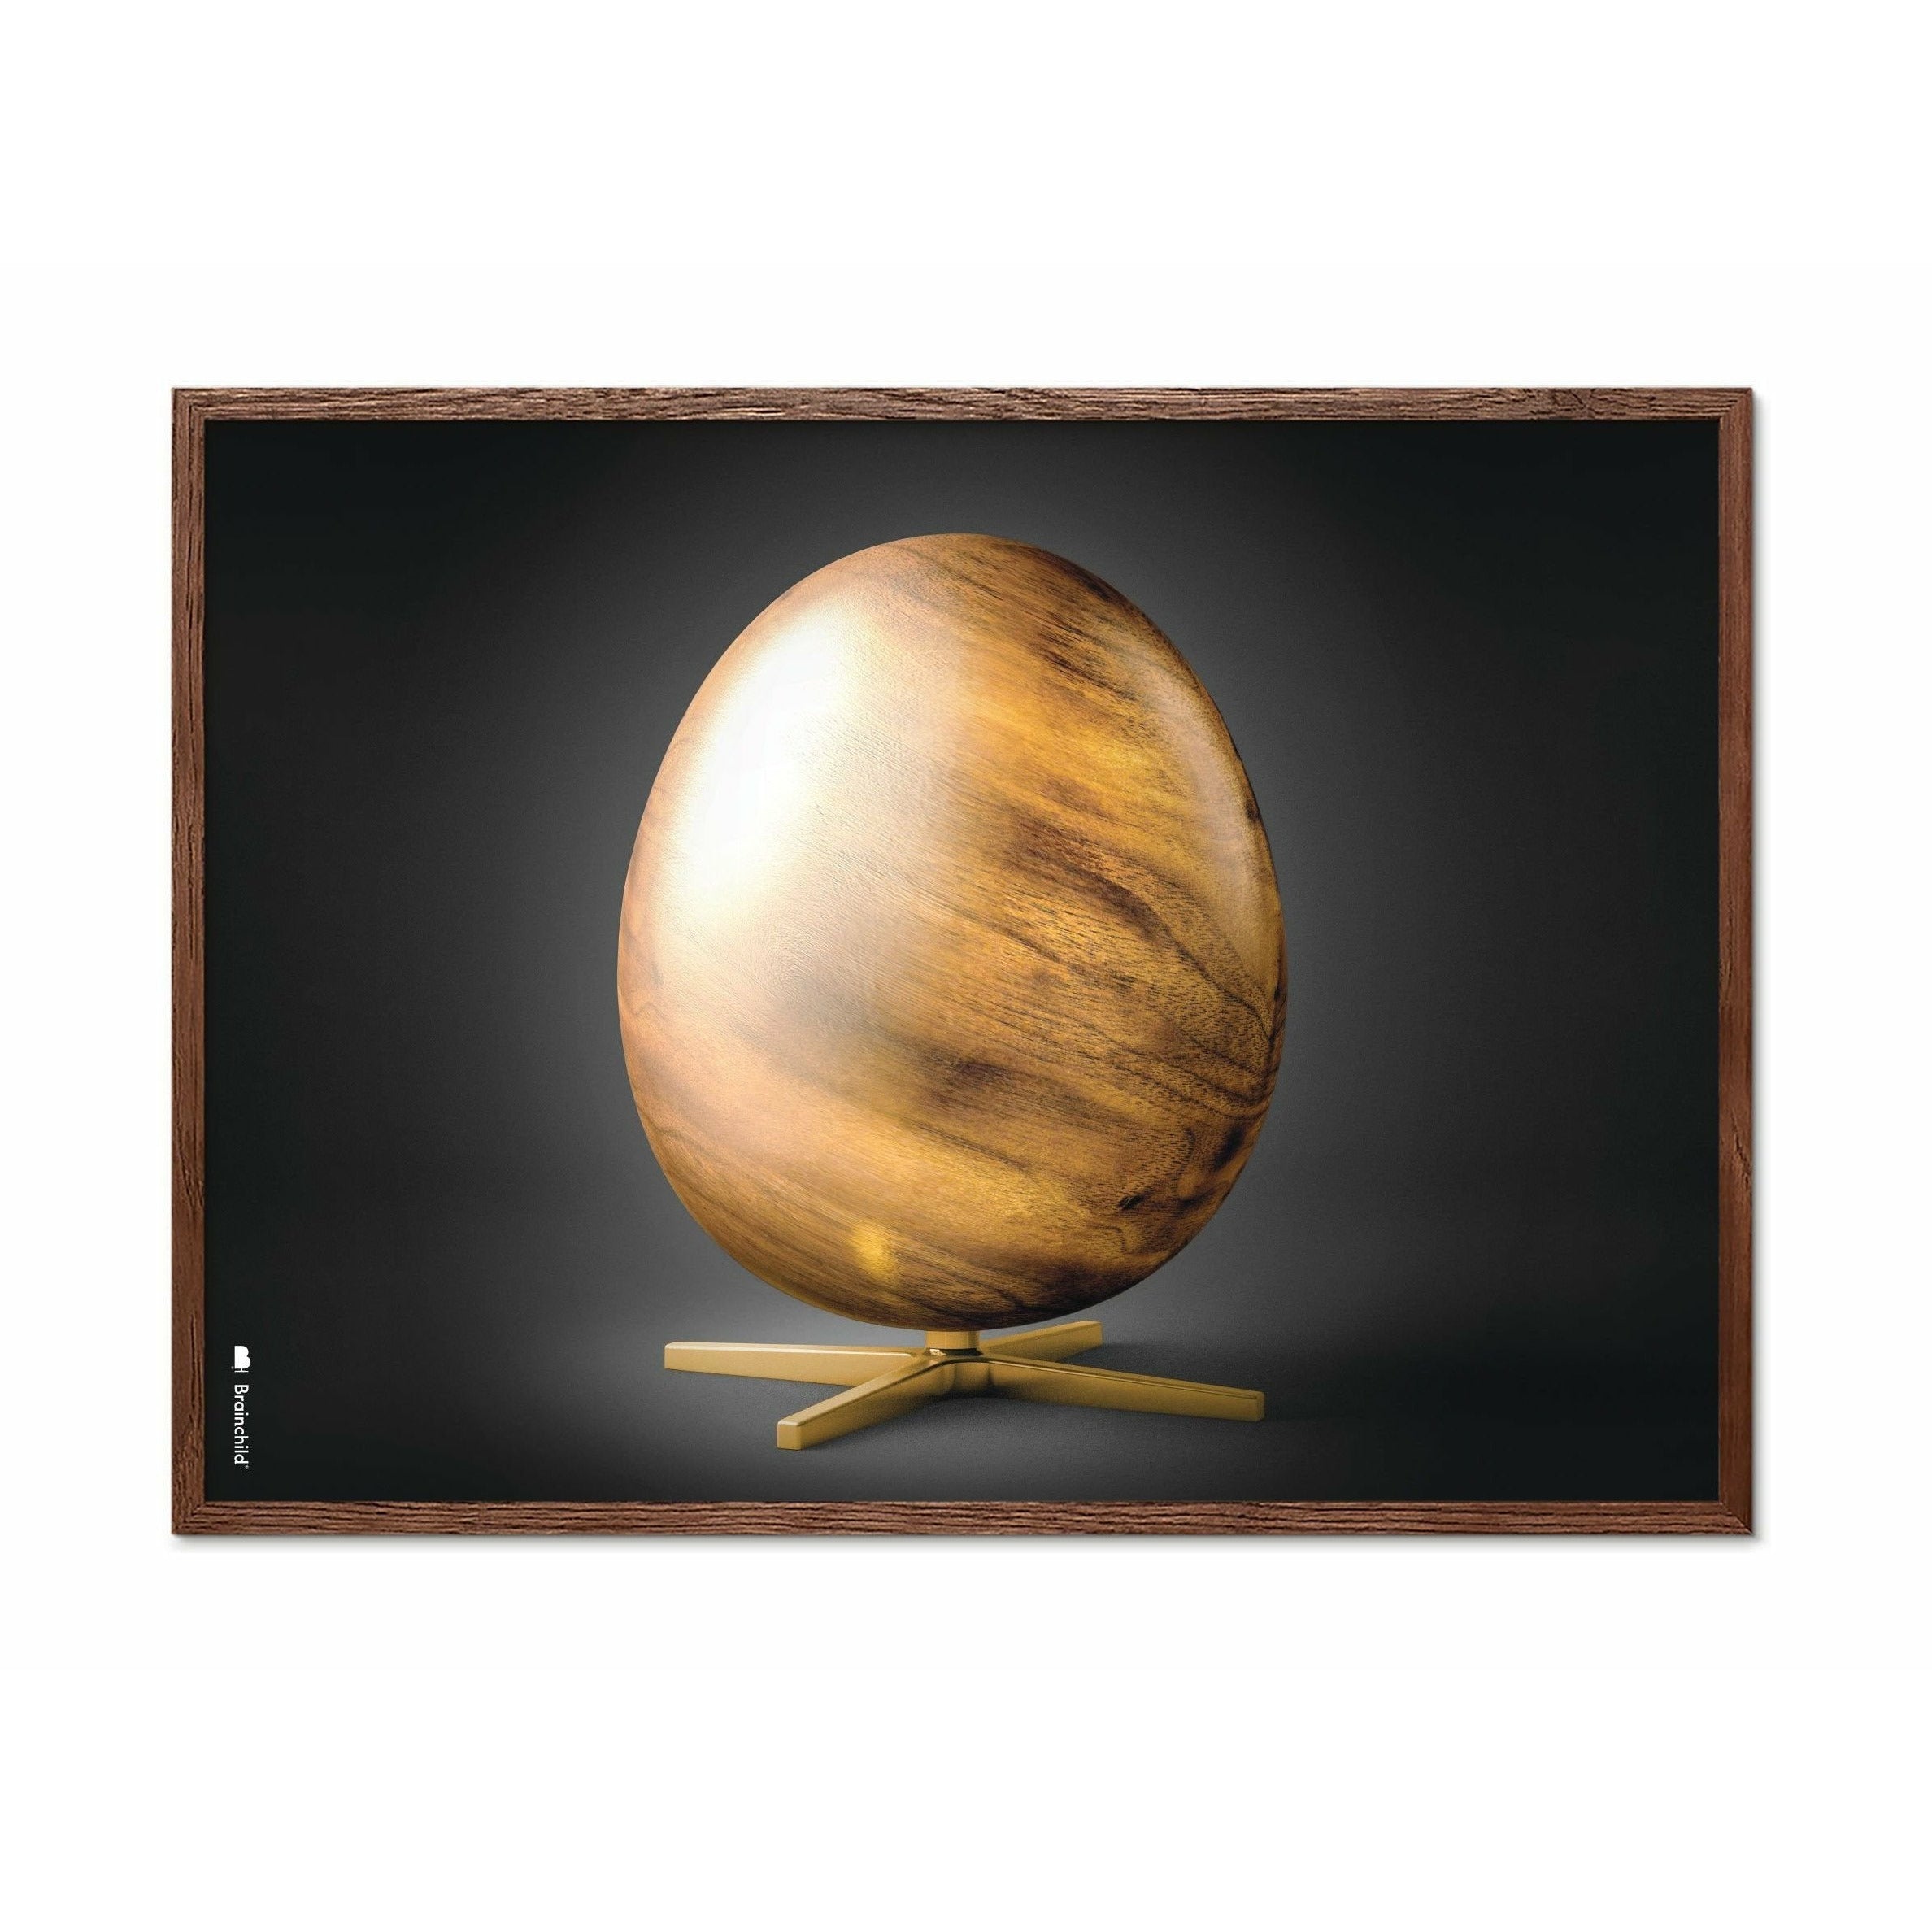 创生鸡蛋交叉格式海报，由深木70x100厘米制成的框架，黑色